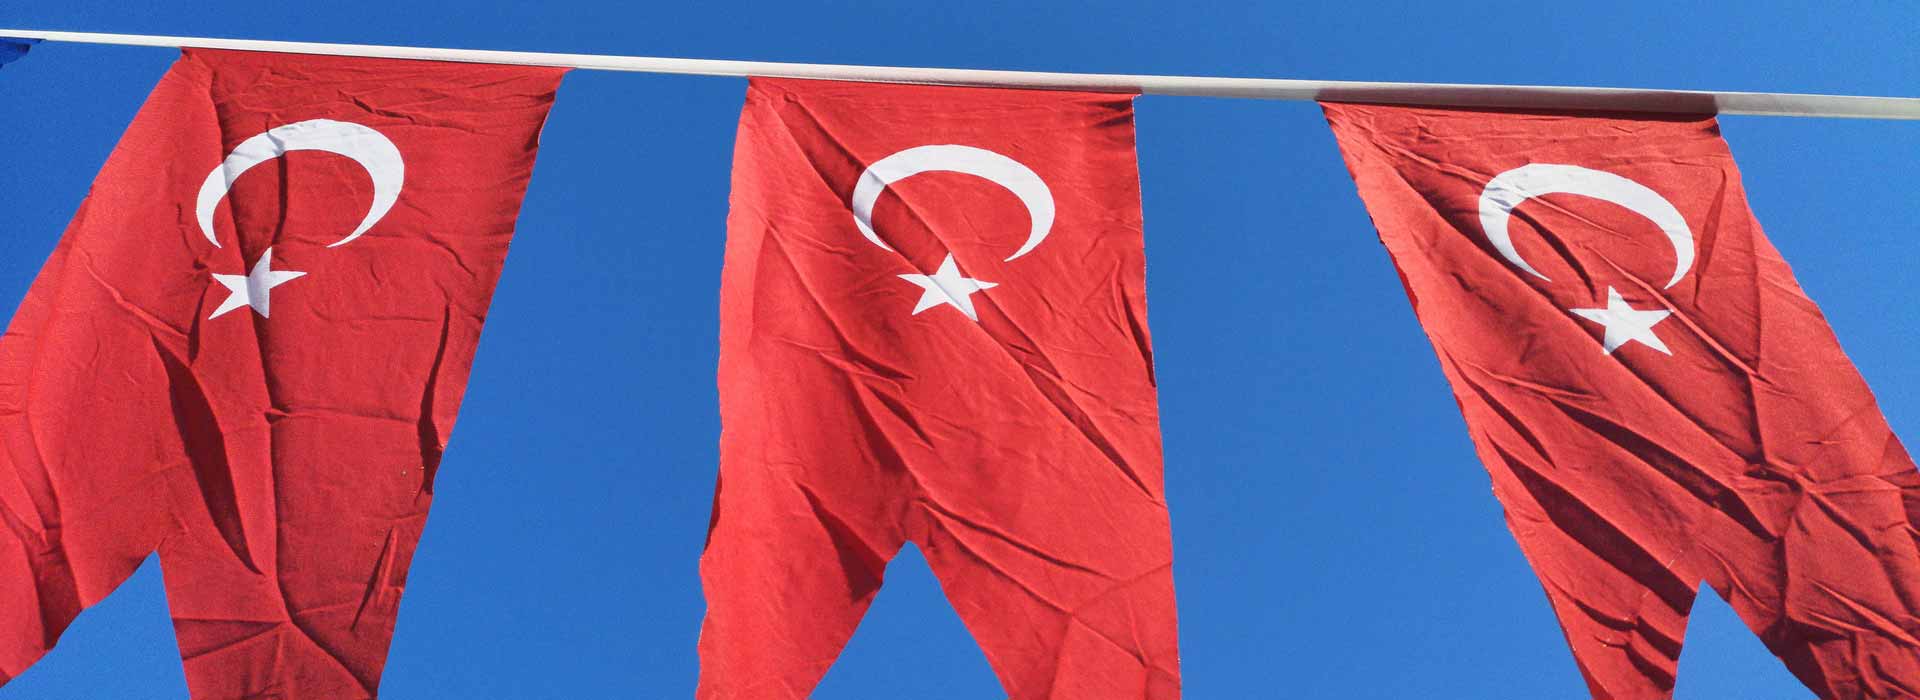 Turchia: toccato il fondo, ma è ancora in contrazione rispetto all'anno precedente